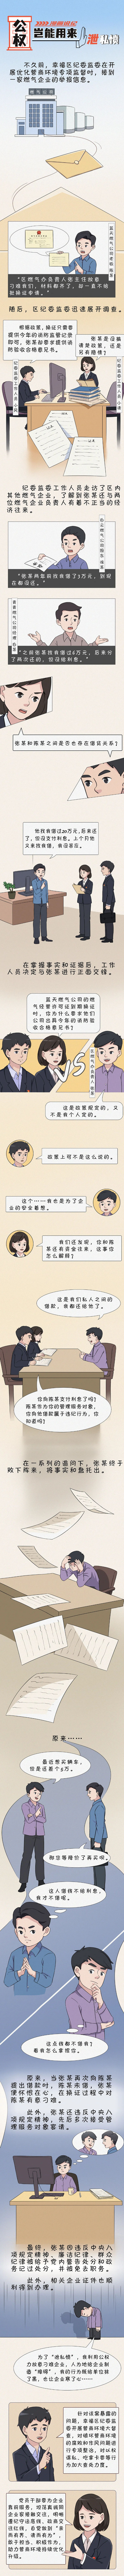 漫画说纪丨因泄私愤故意刁难企业受惩处.png